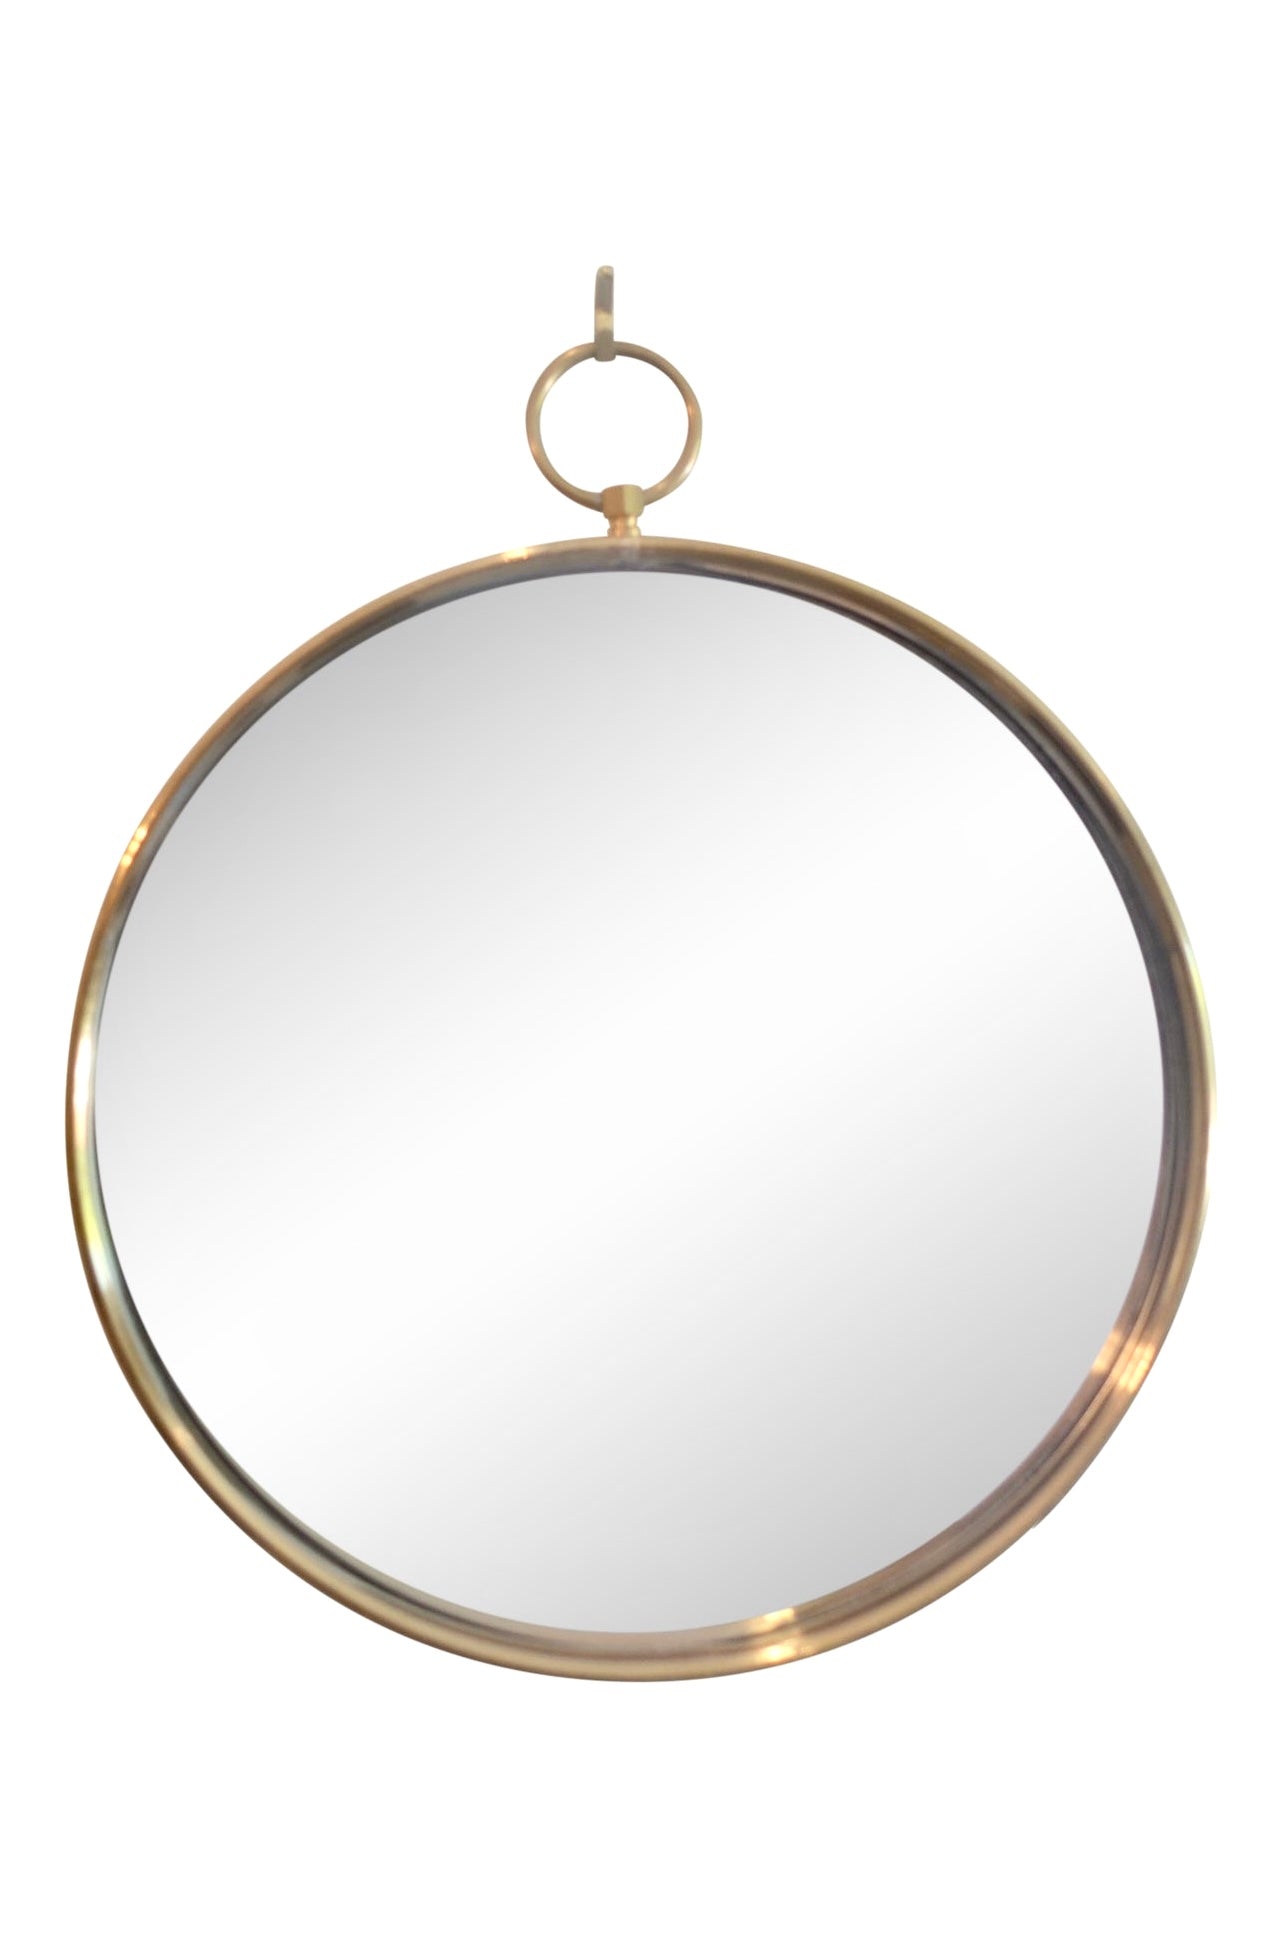 Mid Century brass round wall mirror 12” in diameter